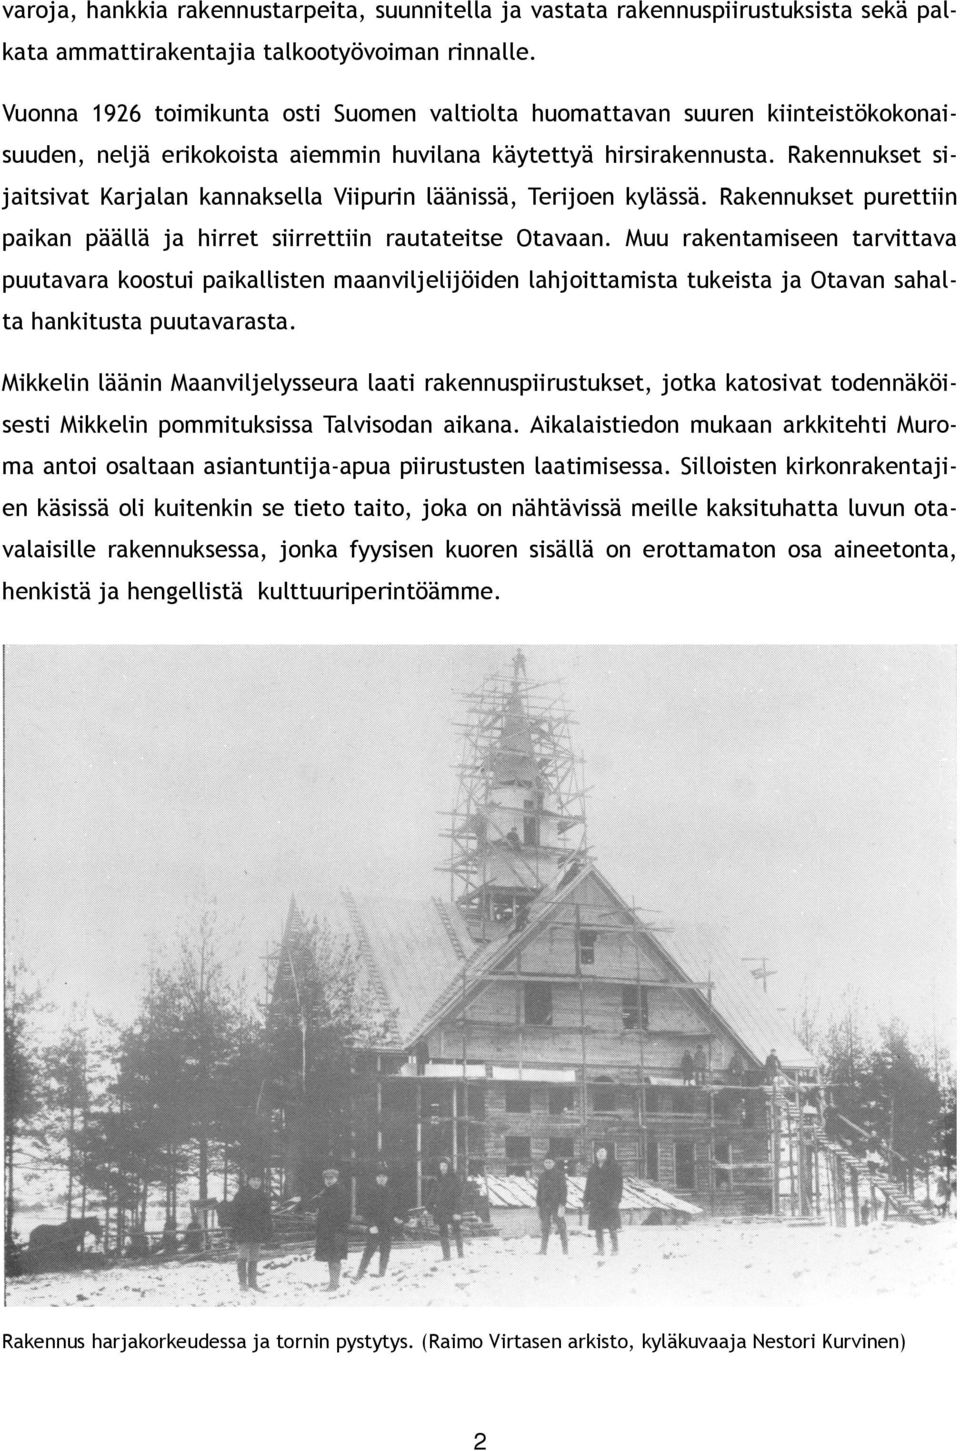 Rakennukset sijaitsivat Karjalan kannaksella Viipurin läänissä, Terijoen kylässä. Rakennukset purettiin paikan päällä ja hirret siirrettiin rautateitse Otavaan.